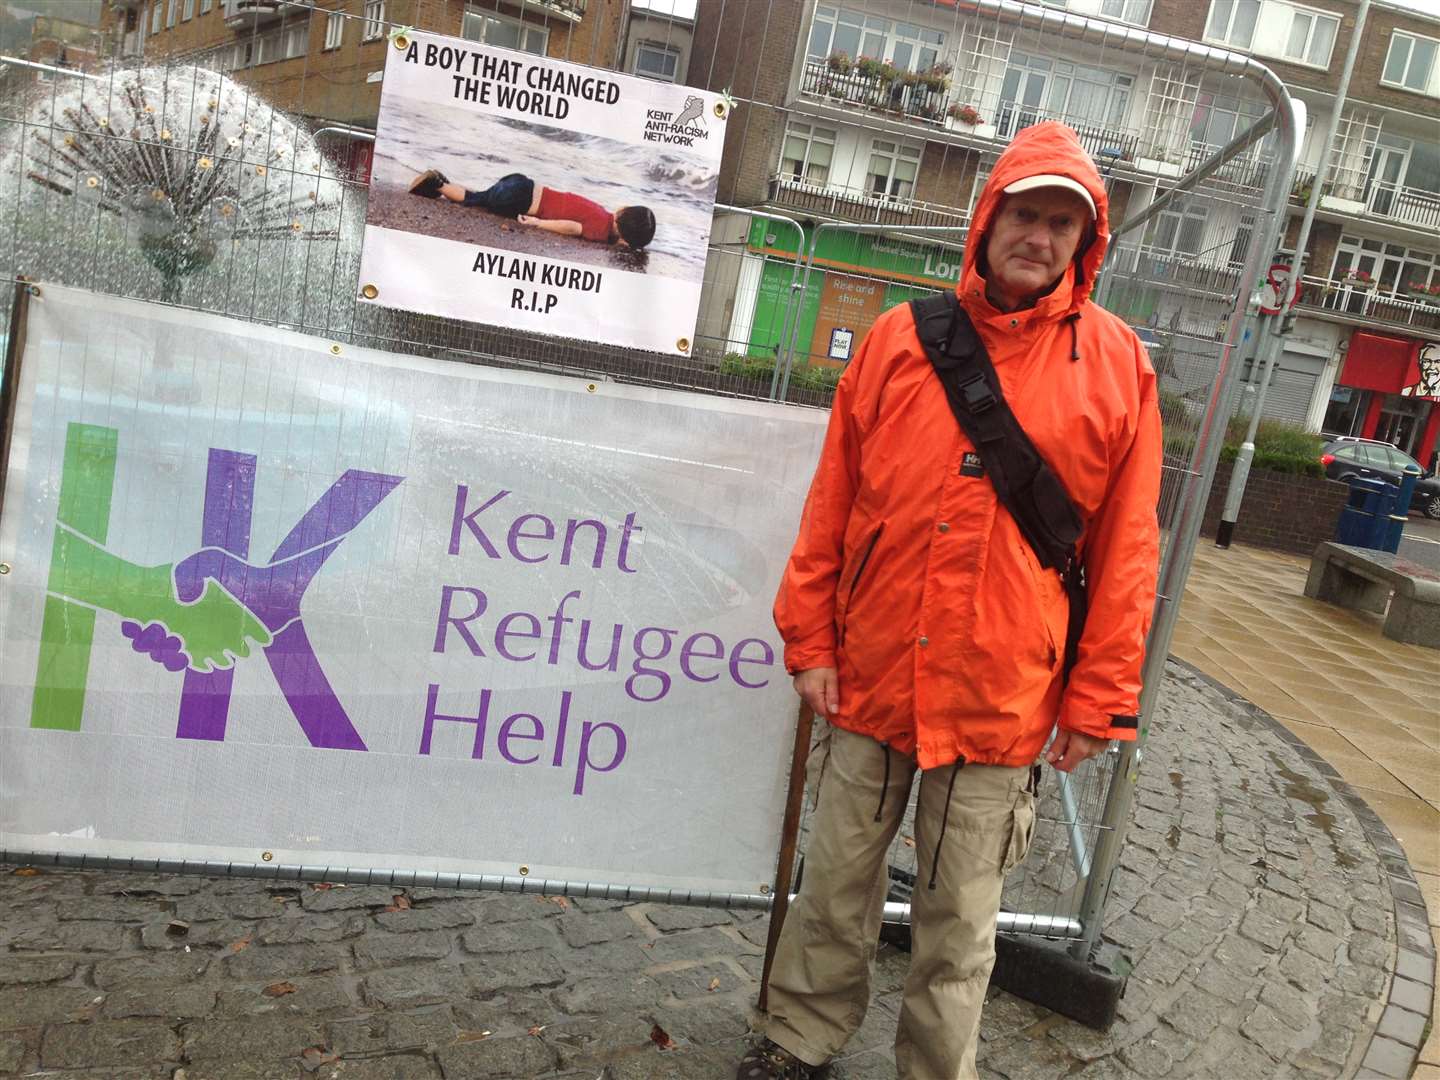 Pete Keenan from Kent Refugee Help